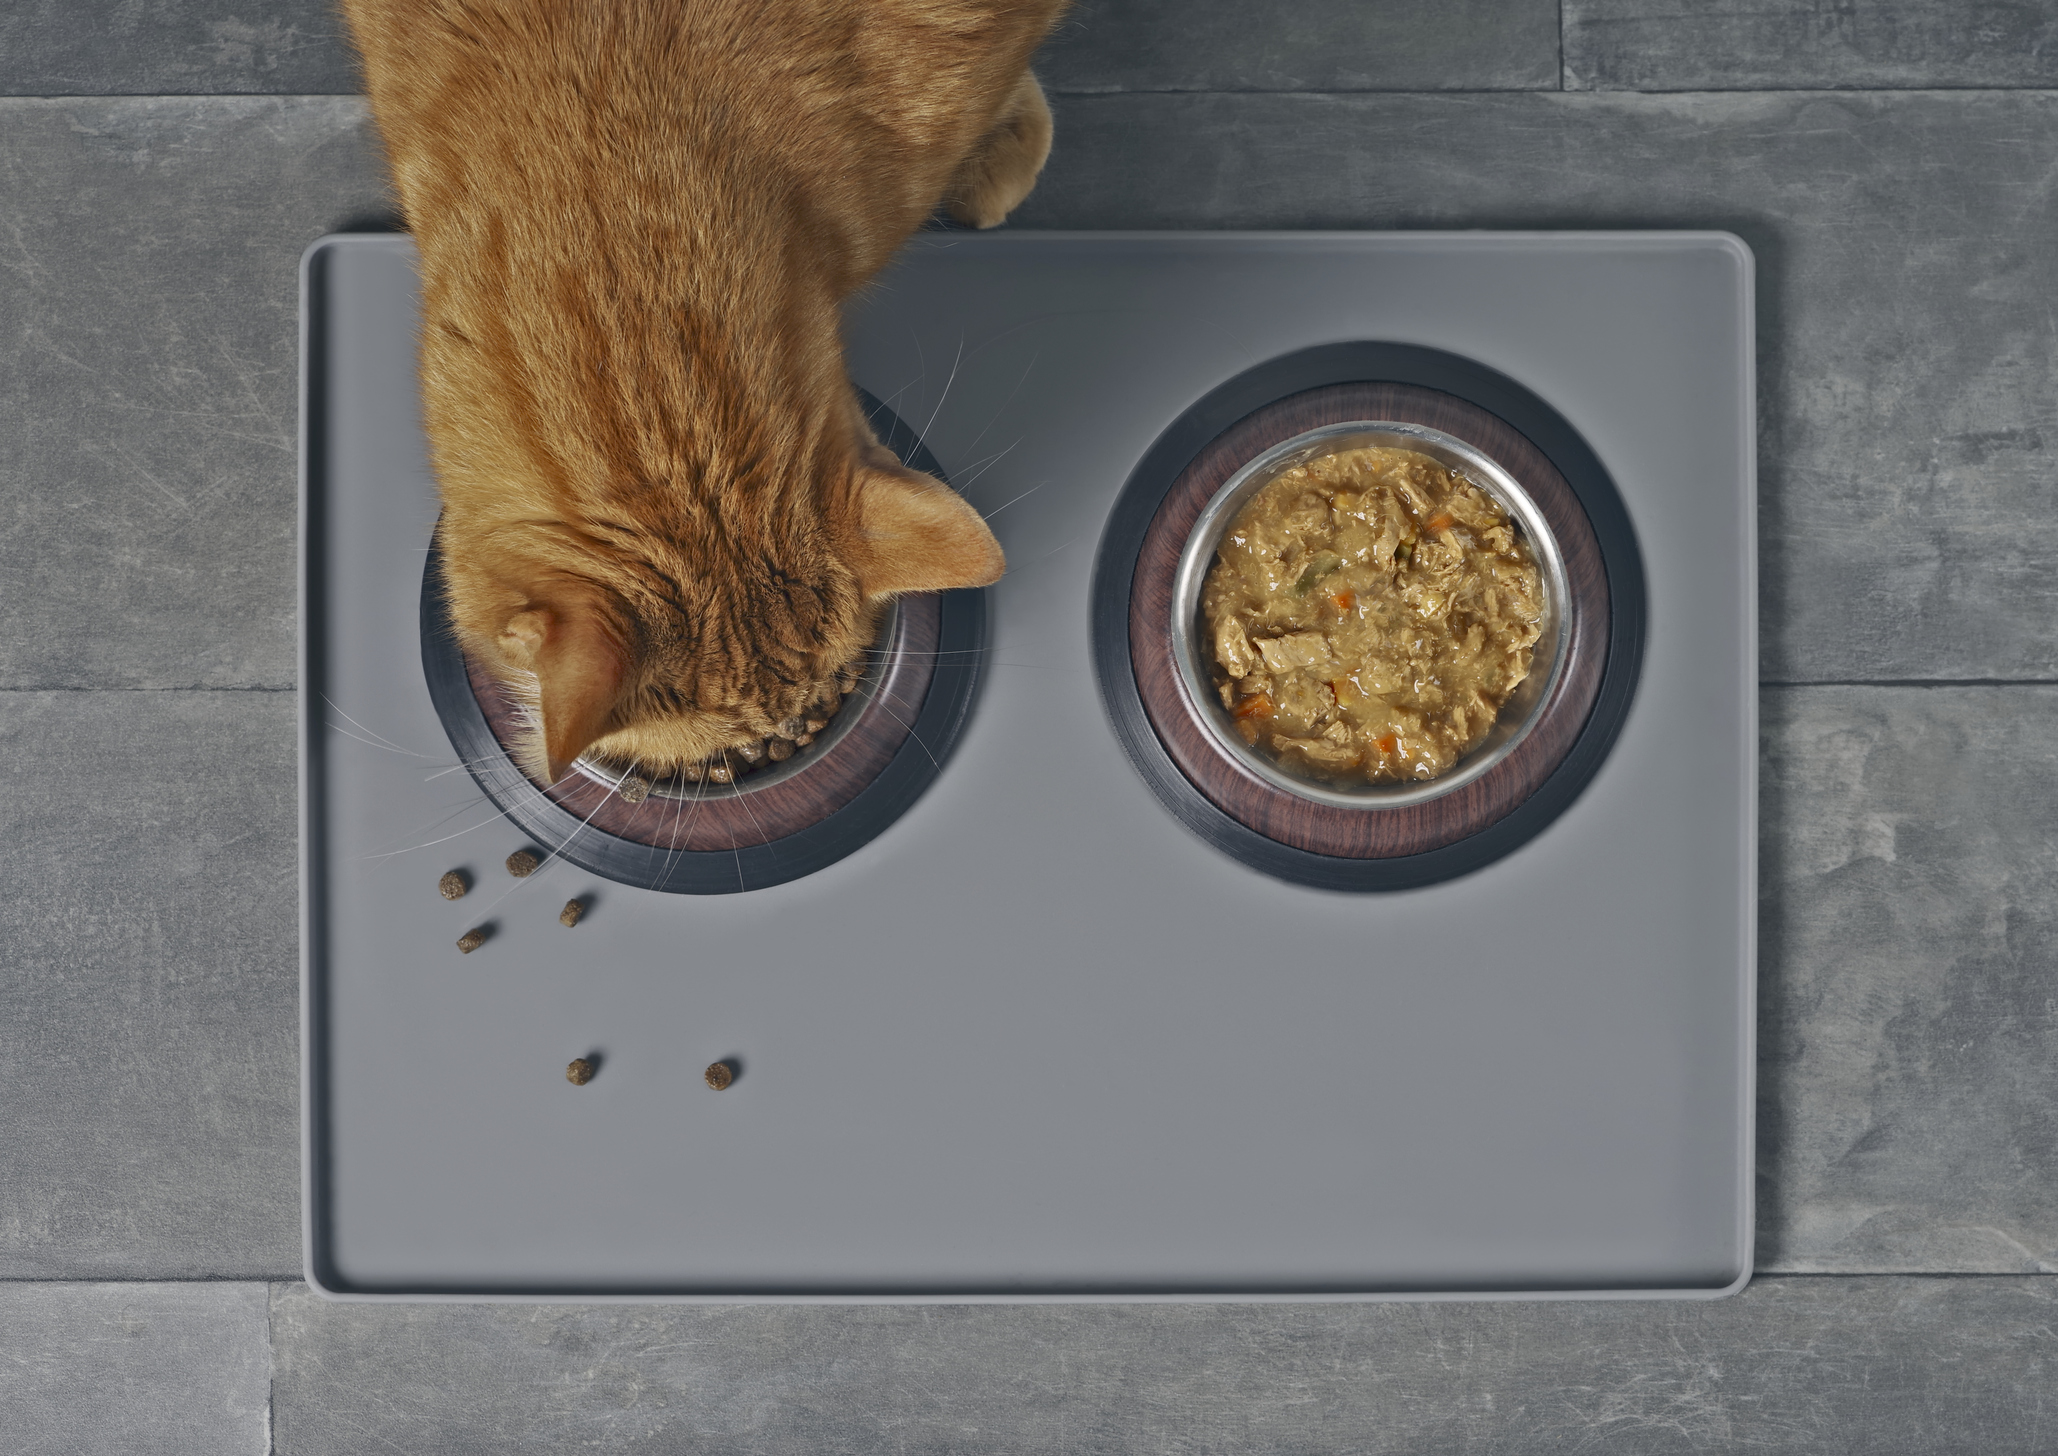 Orange cat eats kibble out of a double dish